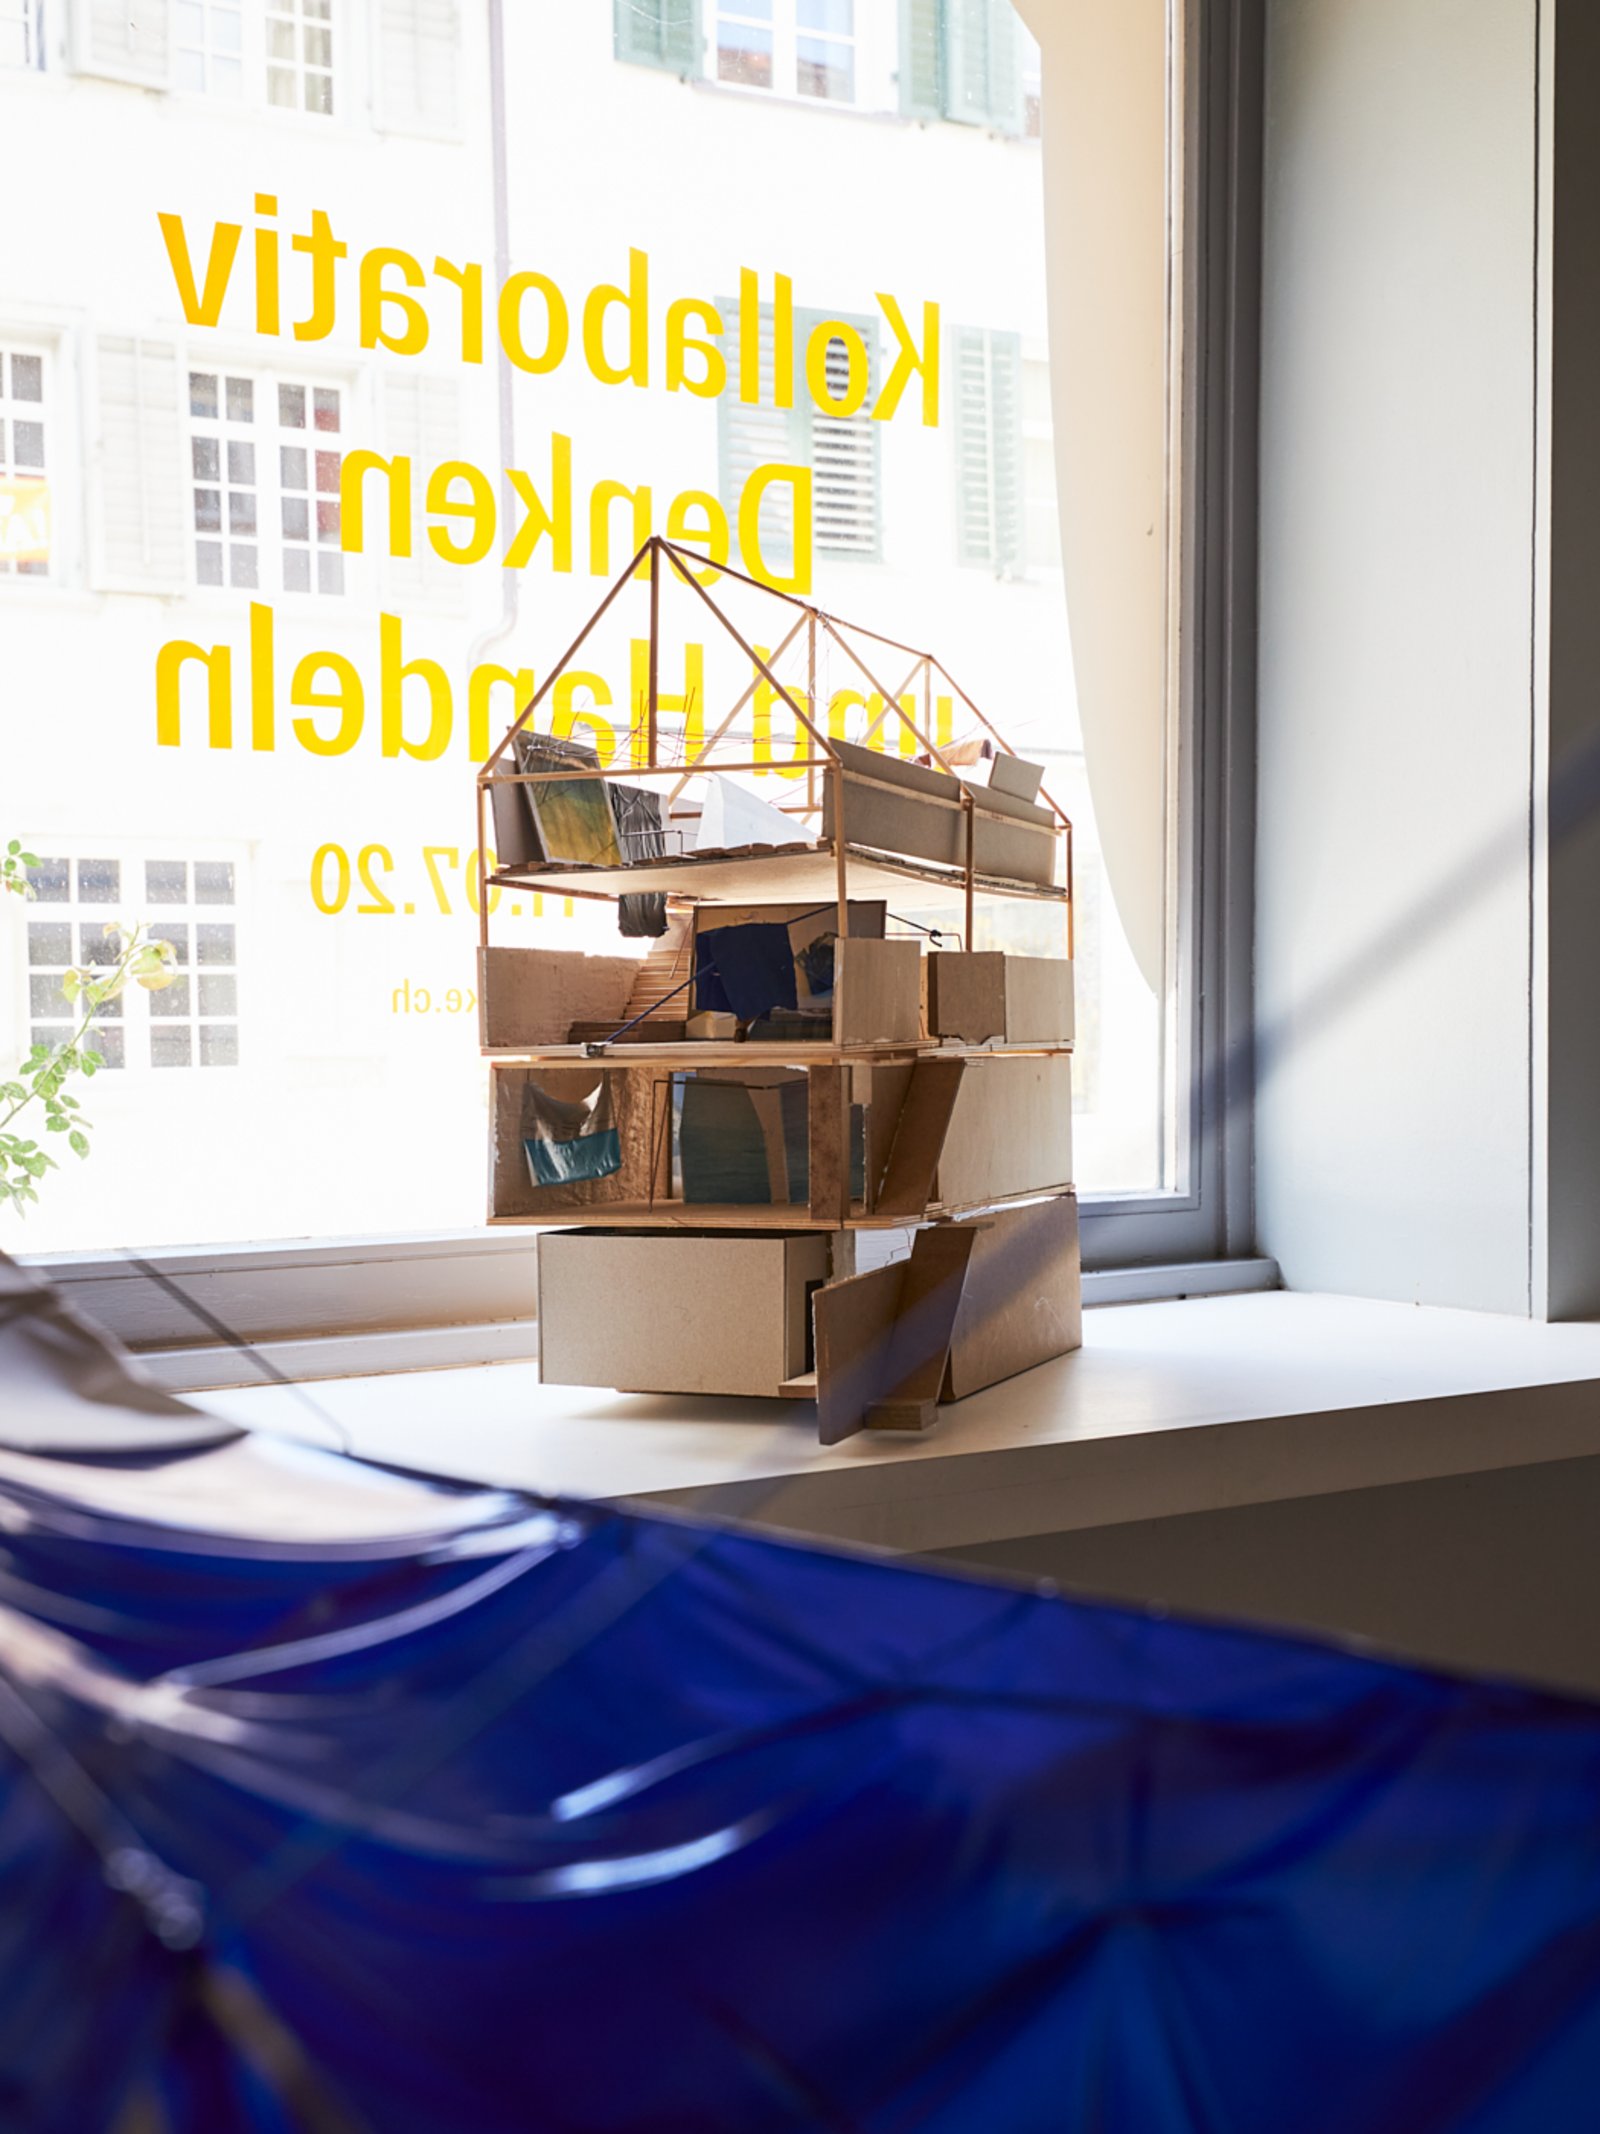 TEAM, Modell vom Haus zur Glocke, 2019 (Foto: Kaspar Schweizer)